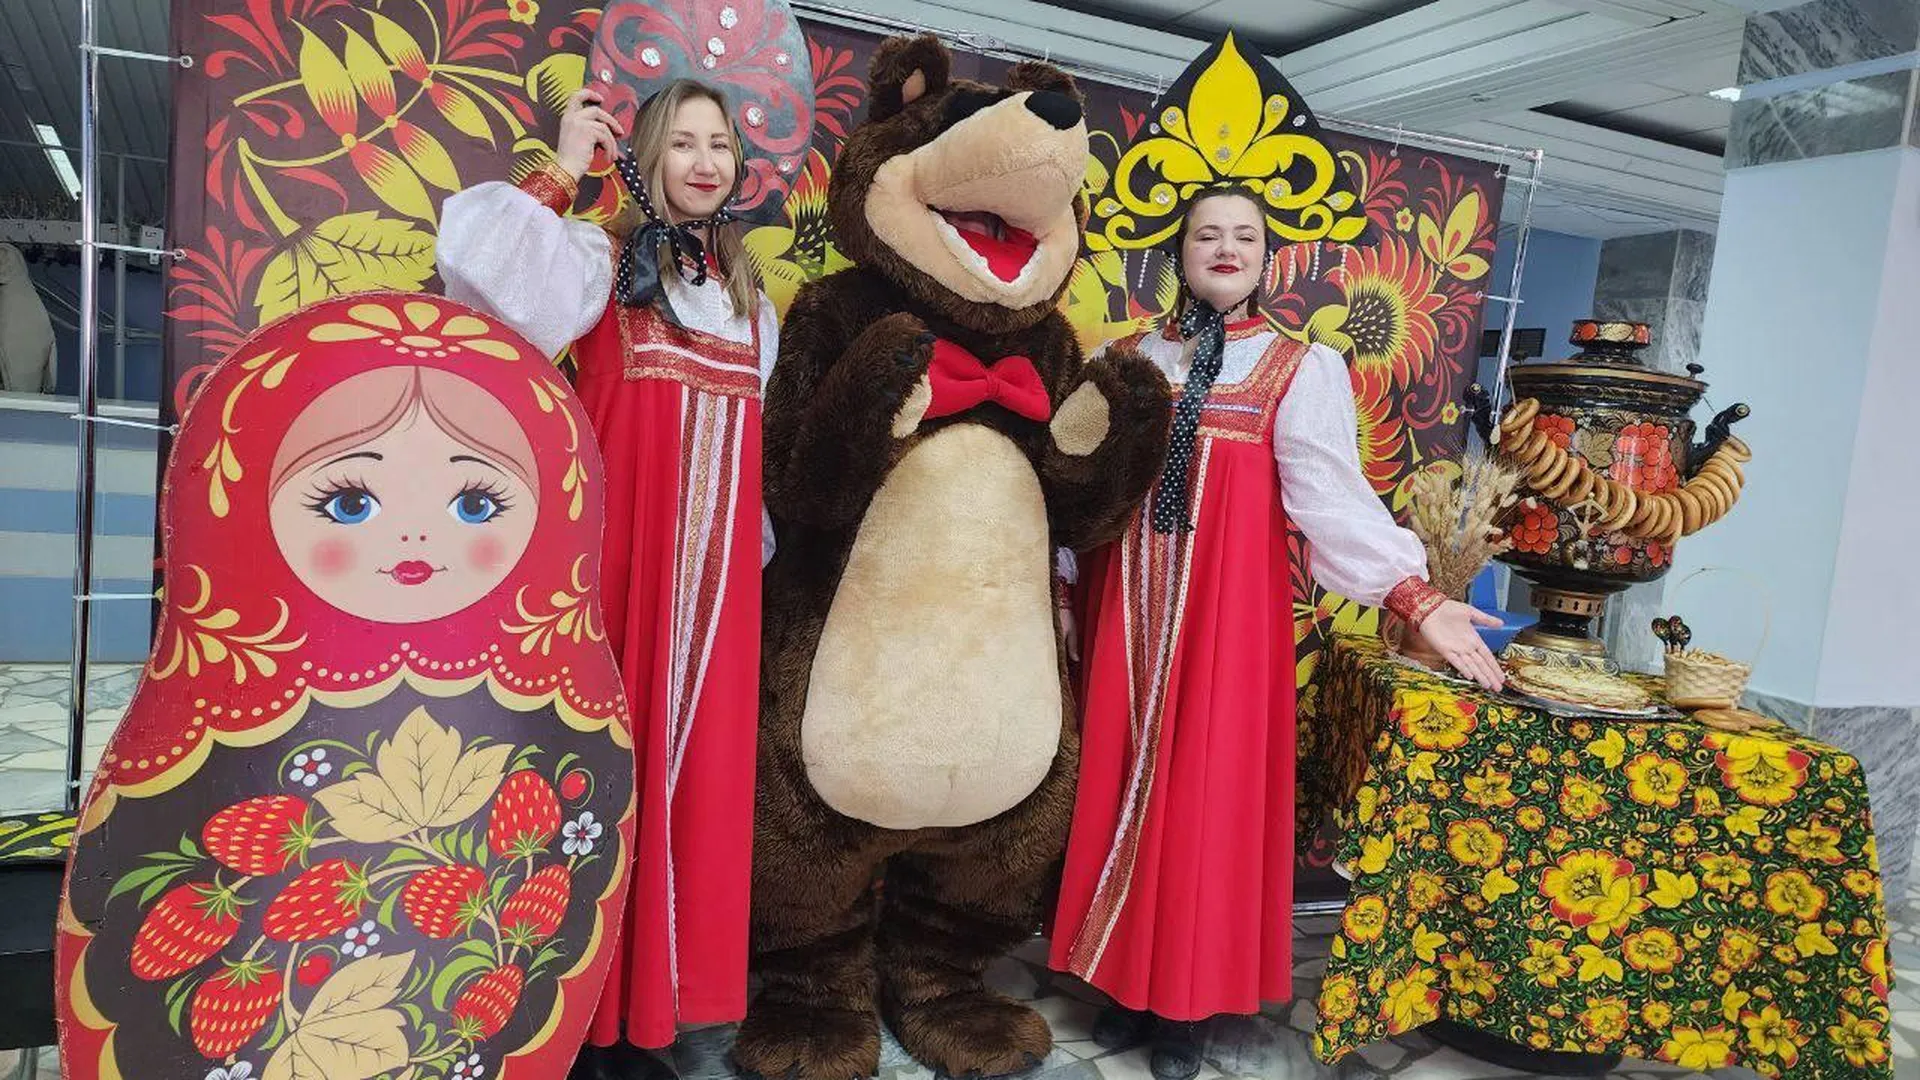 Избирателей на участке в Можайске встретили девушки в русских народных костюмах